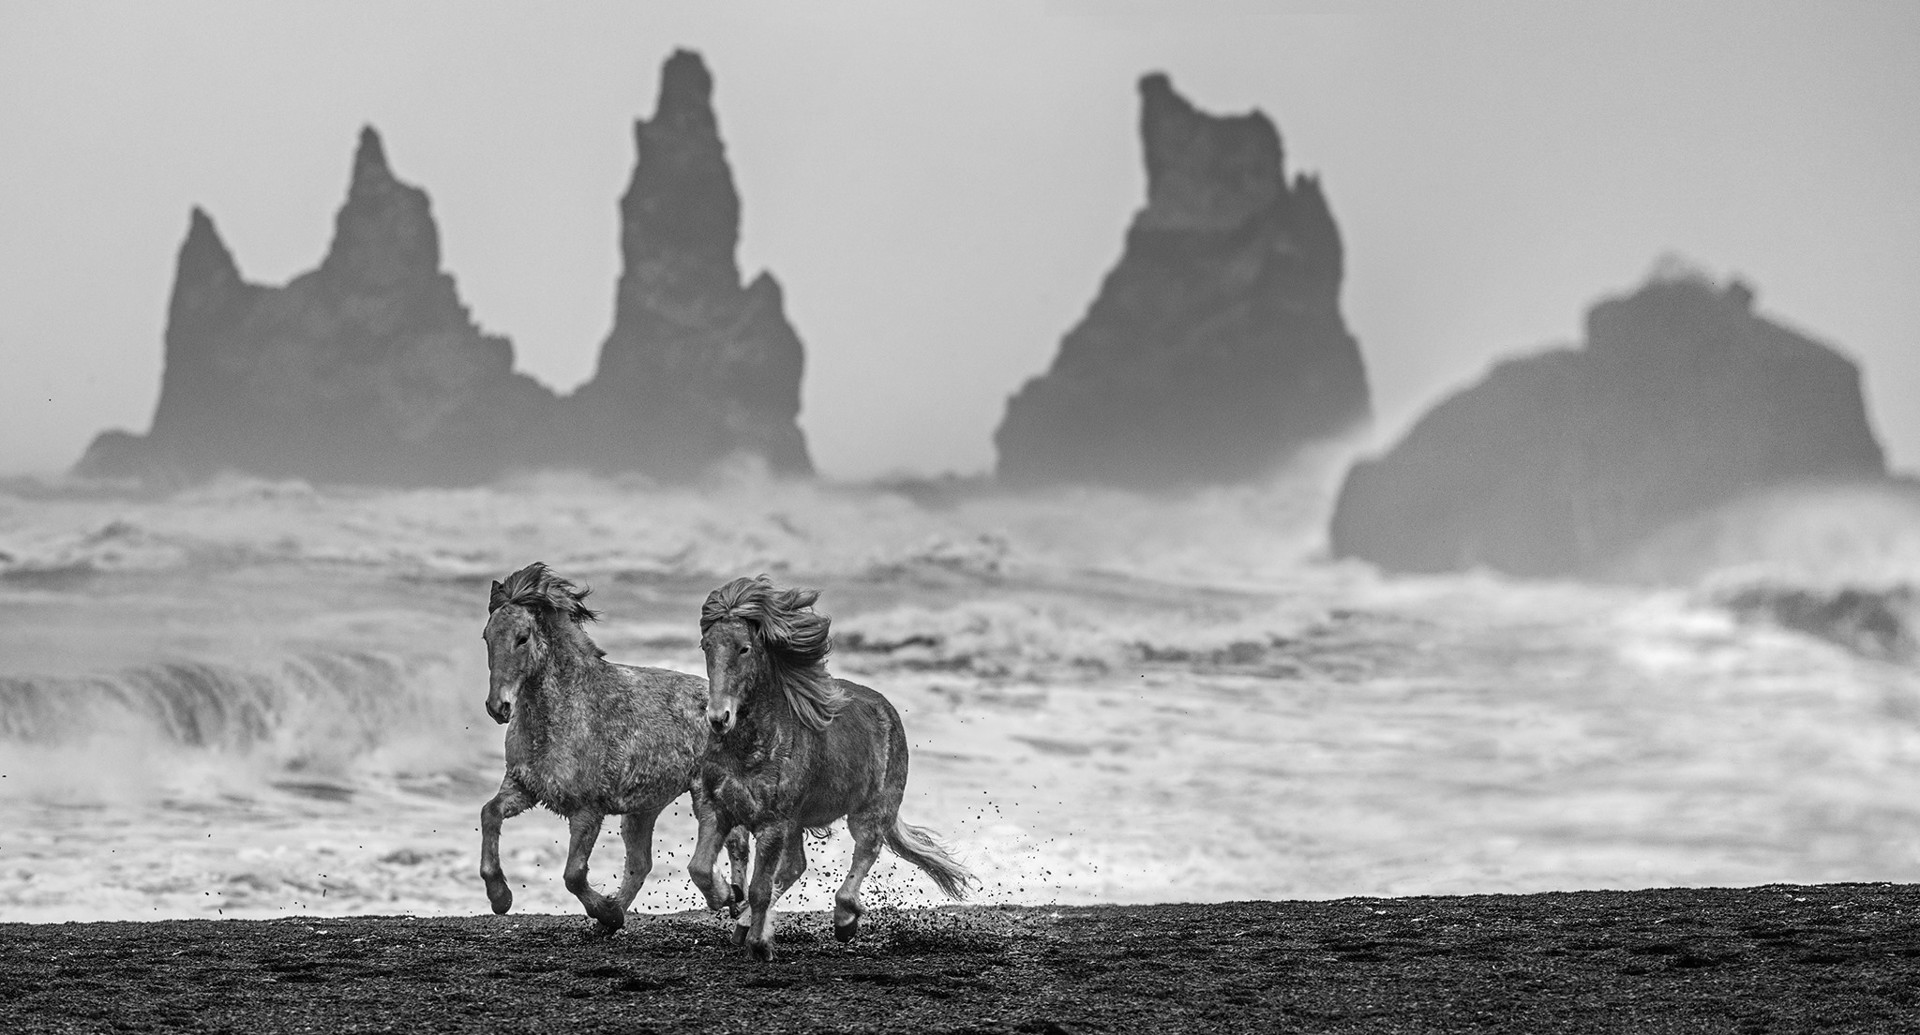 Wild Horses by David Yarrow